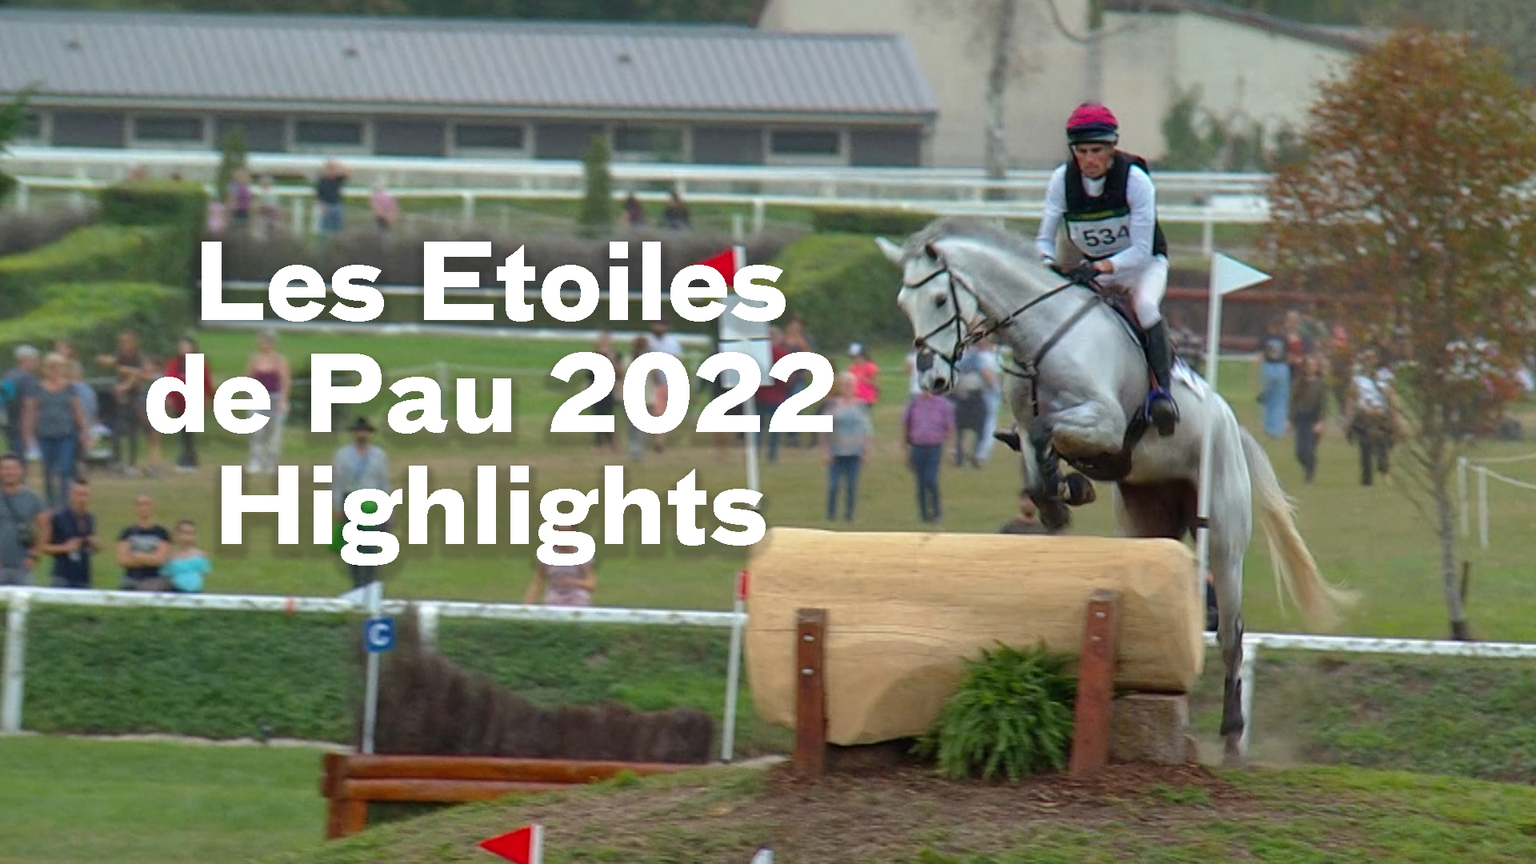 Les Etoiles de Pau 2022 Highlights